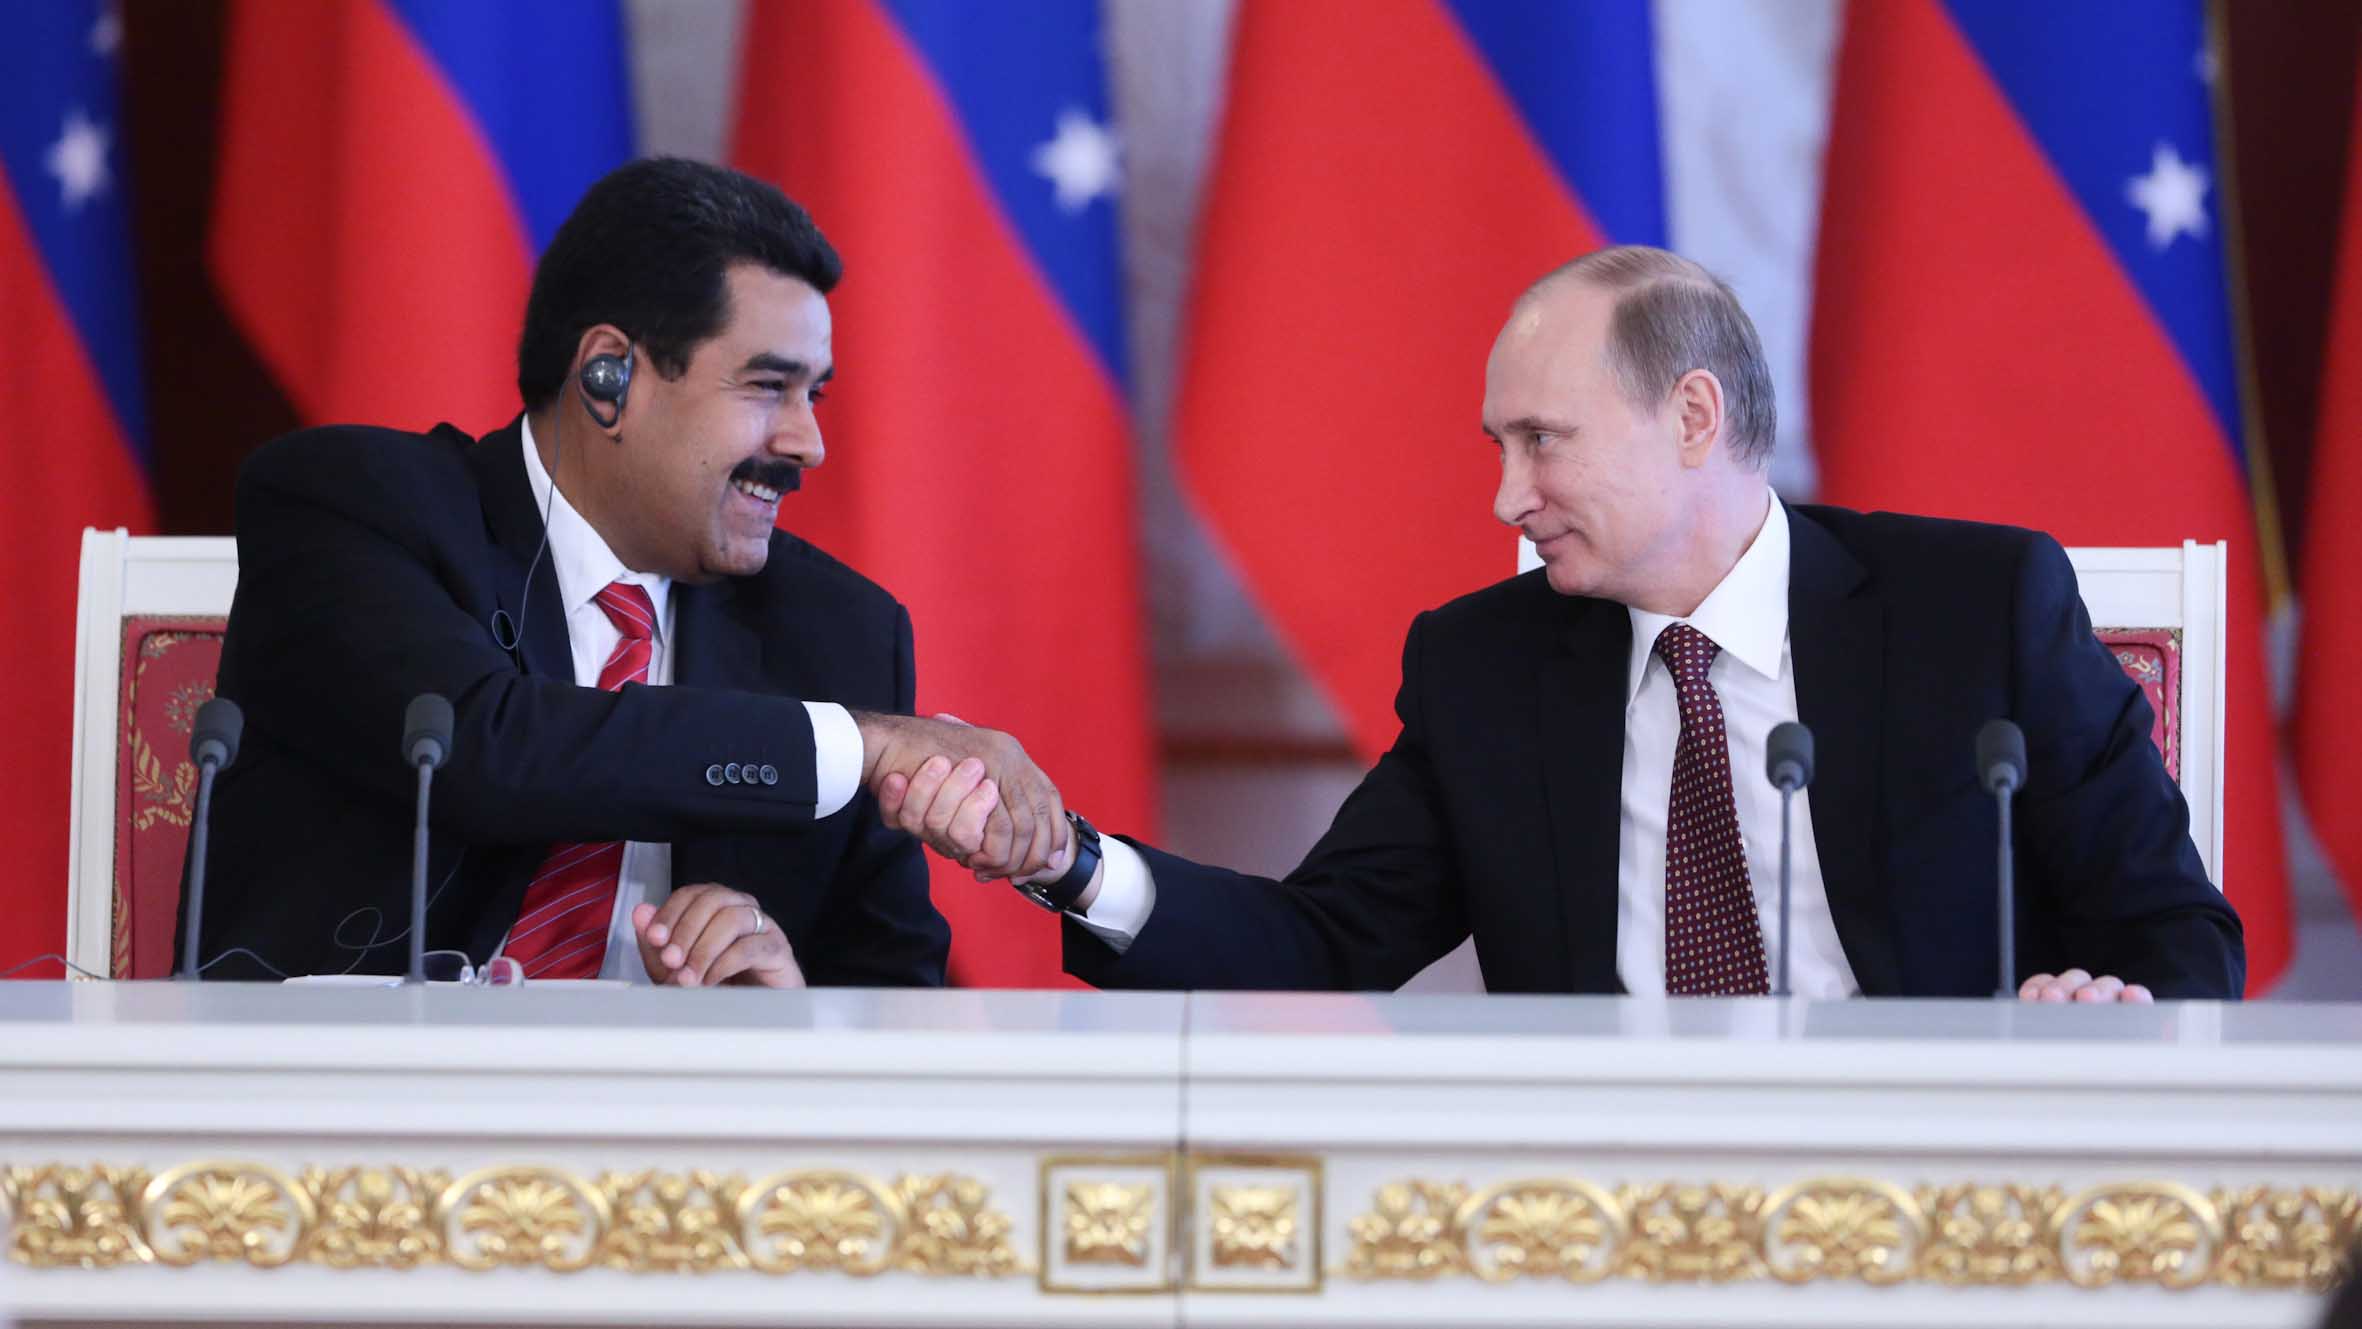 Doble llave - Venezuela y Rusia ratificaron relaciones bilaterales